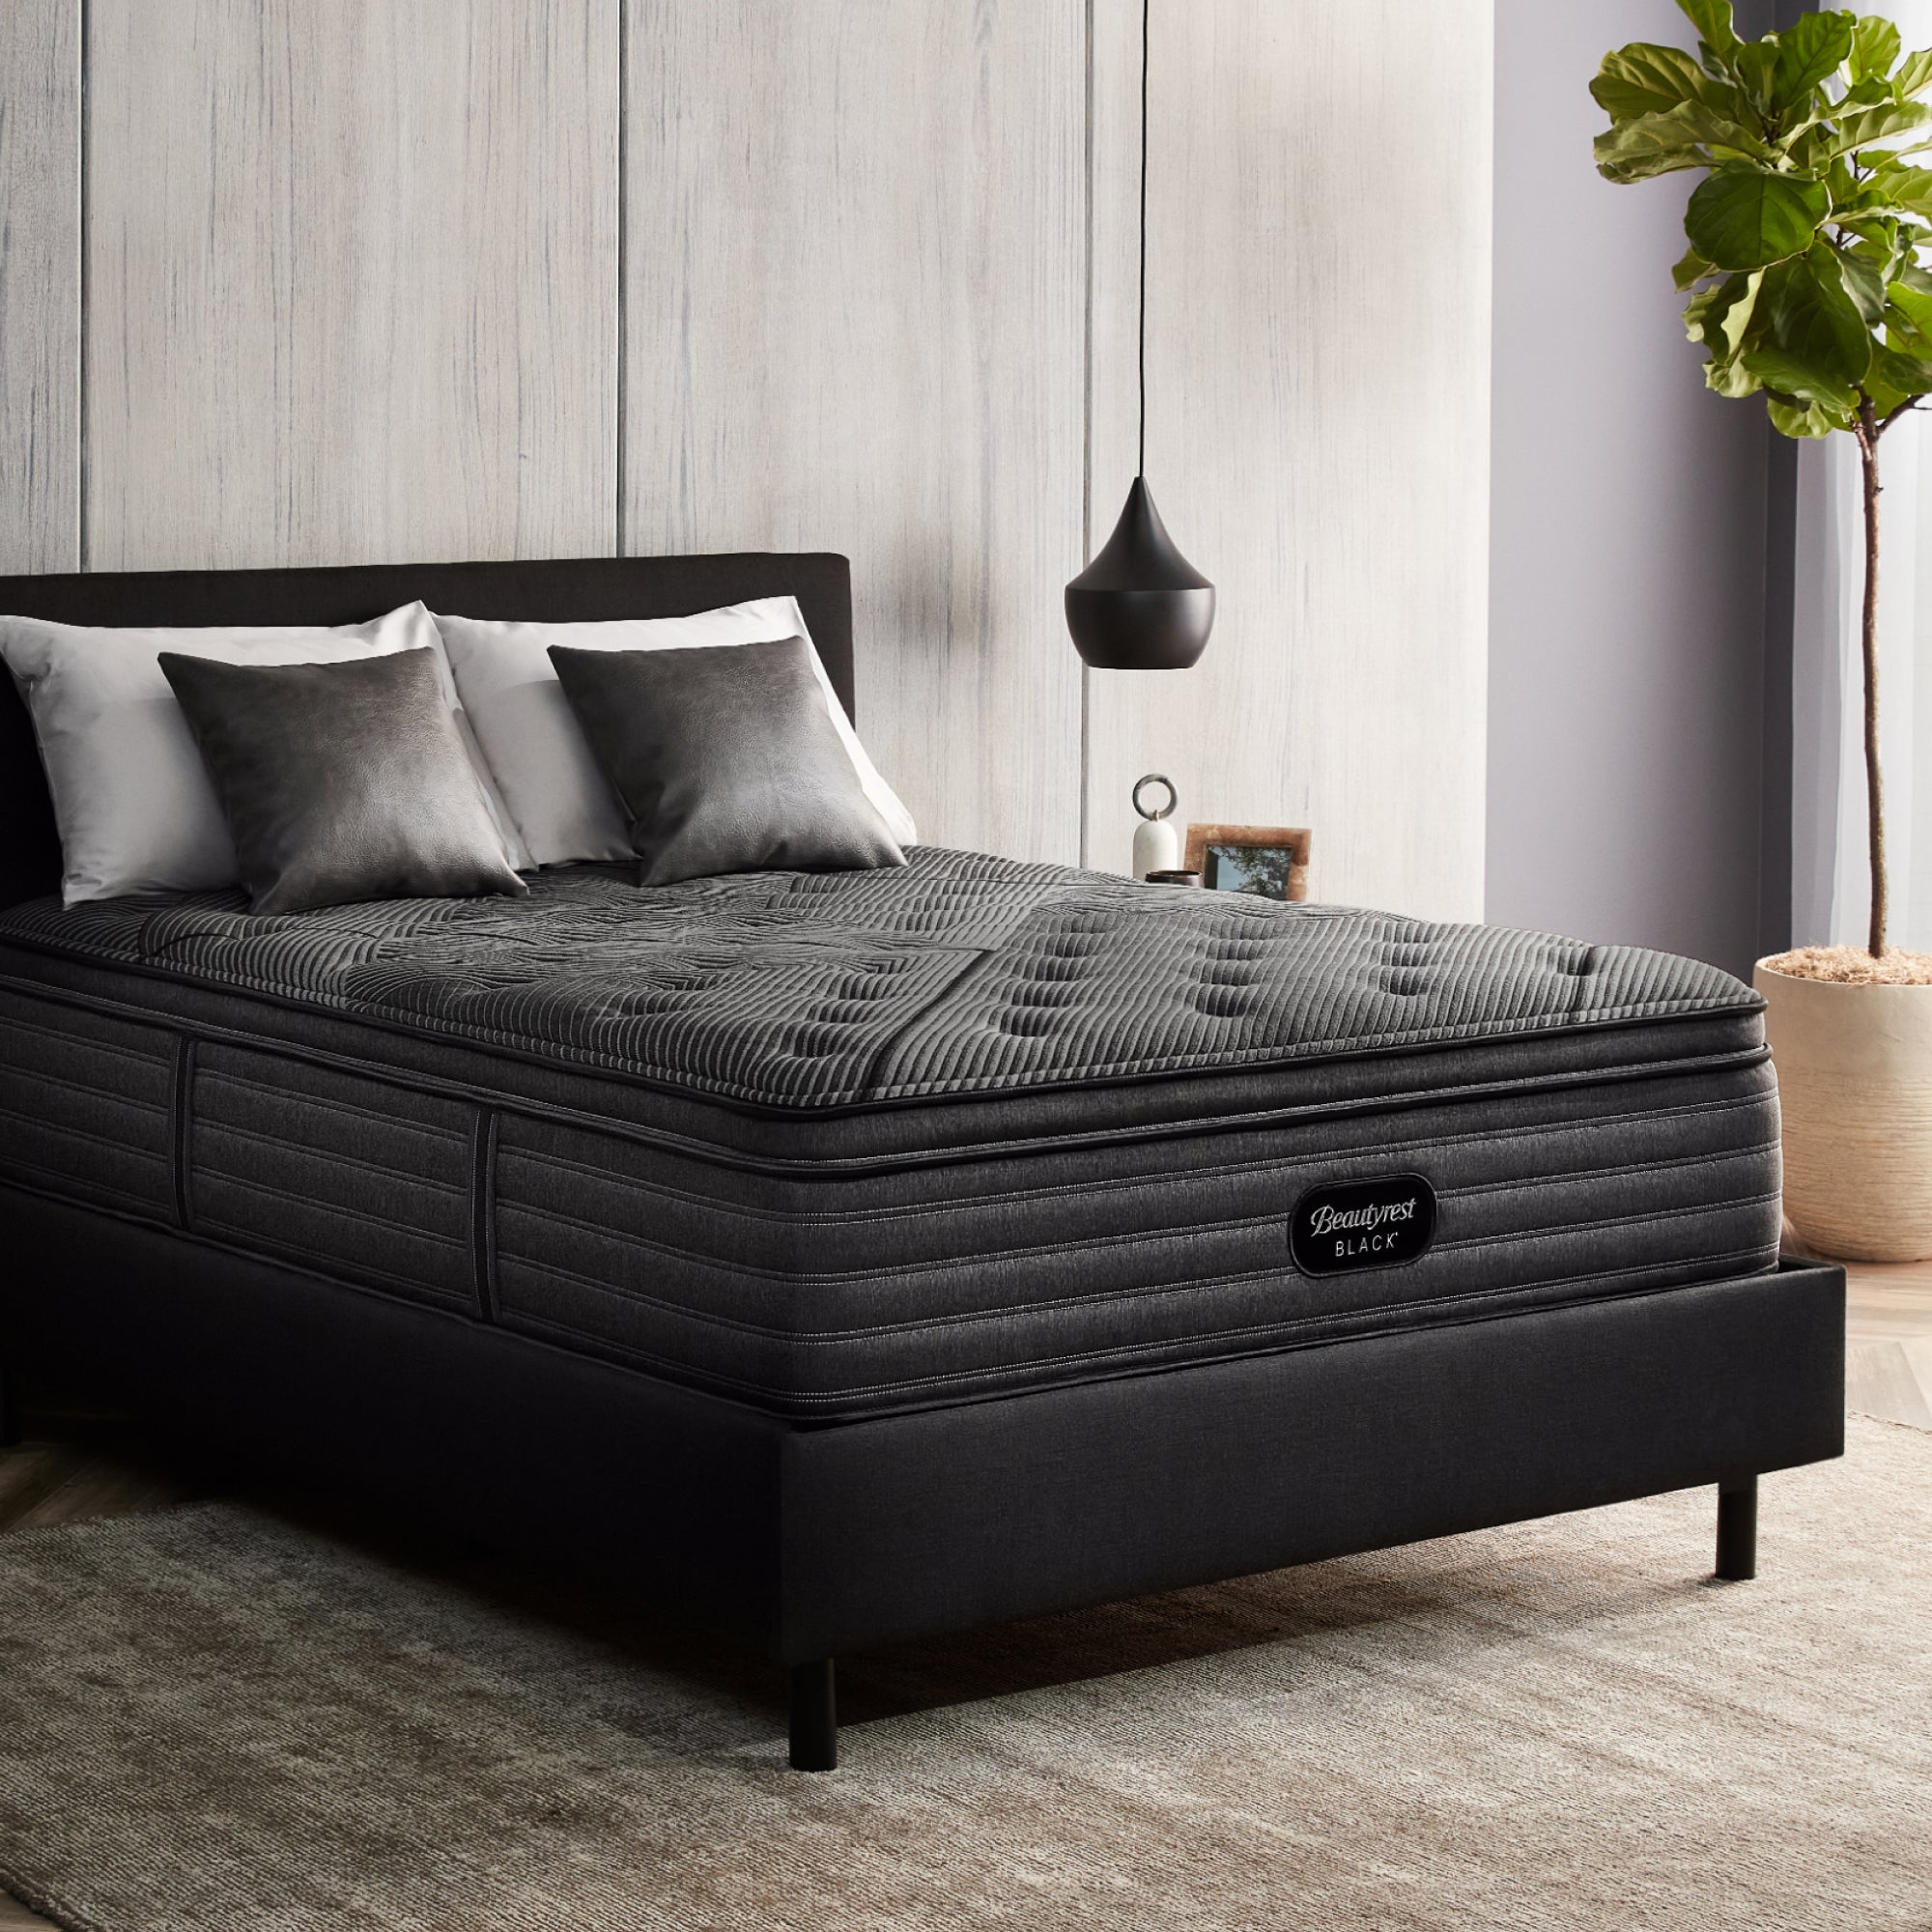 The Beautyrest Black l-class mattress||series: enhanced l-class || feel: medium pillow top